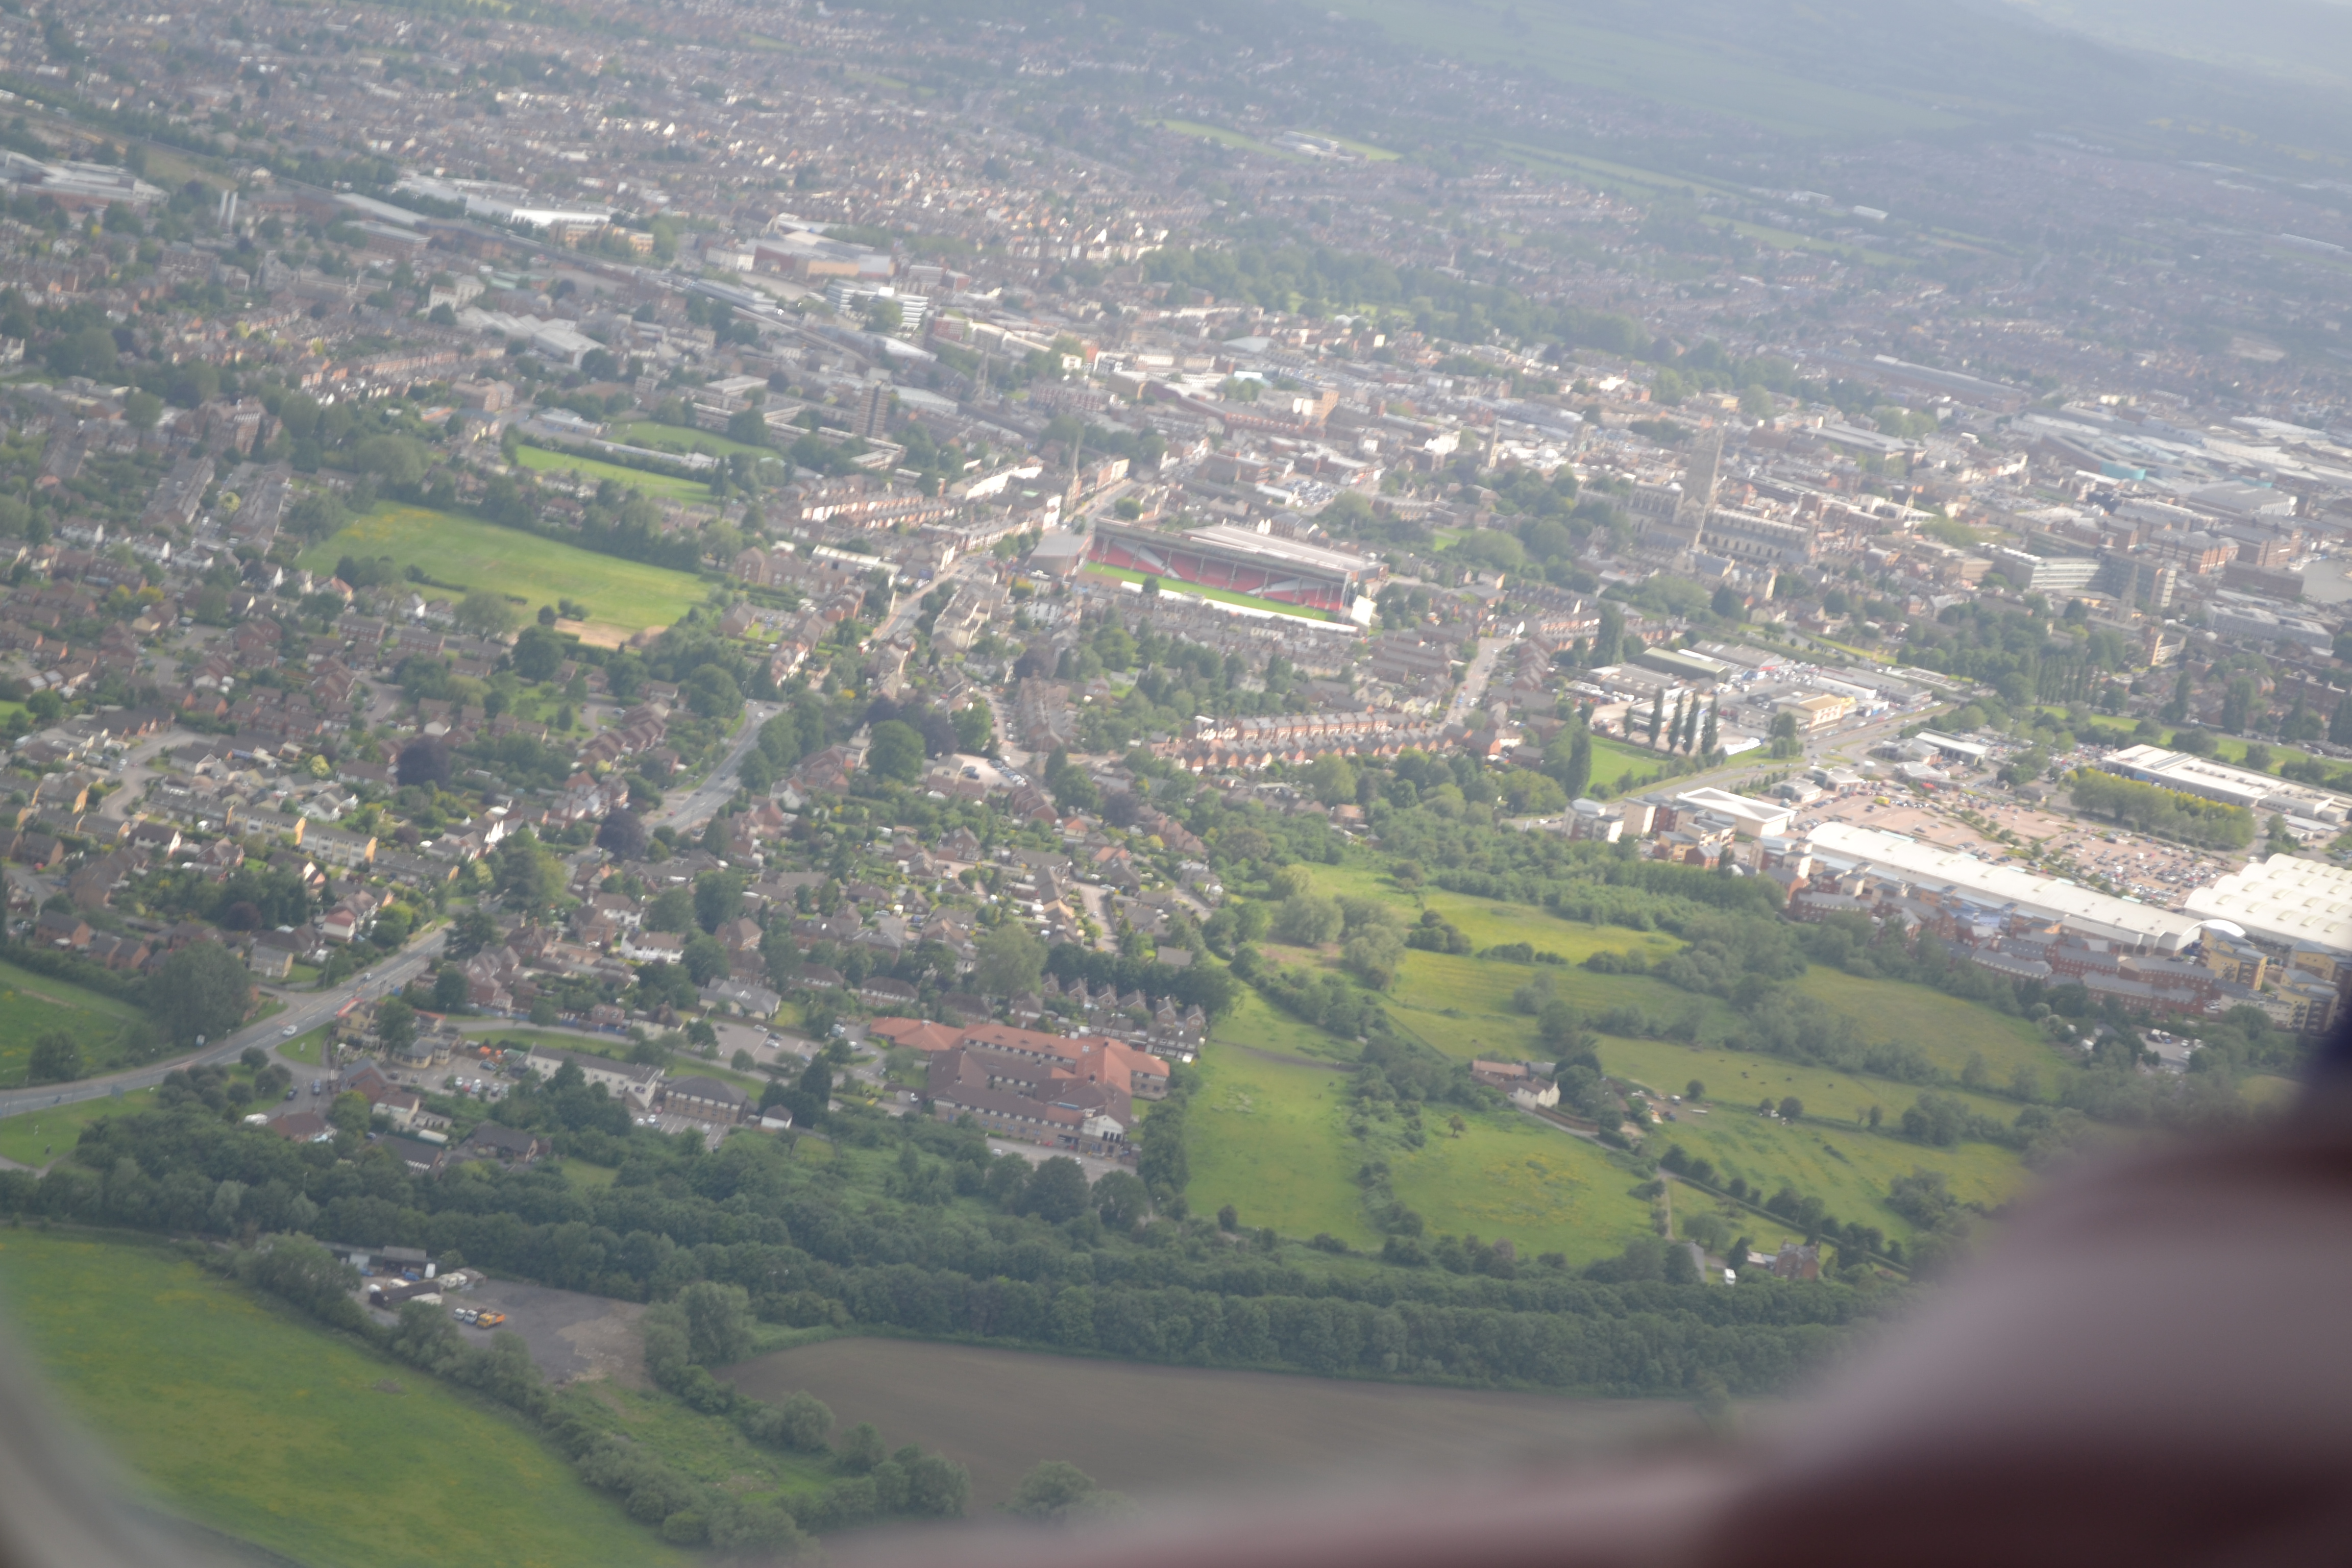 View of Cheltenham